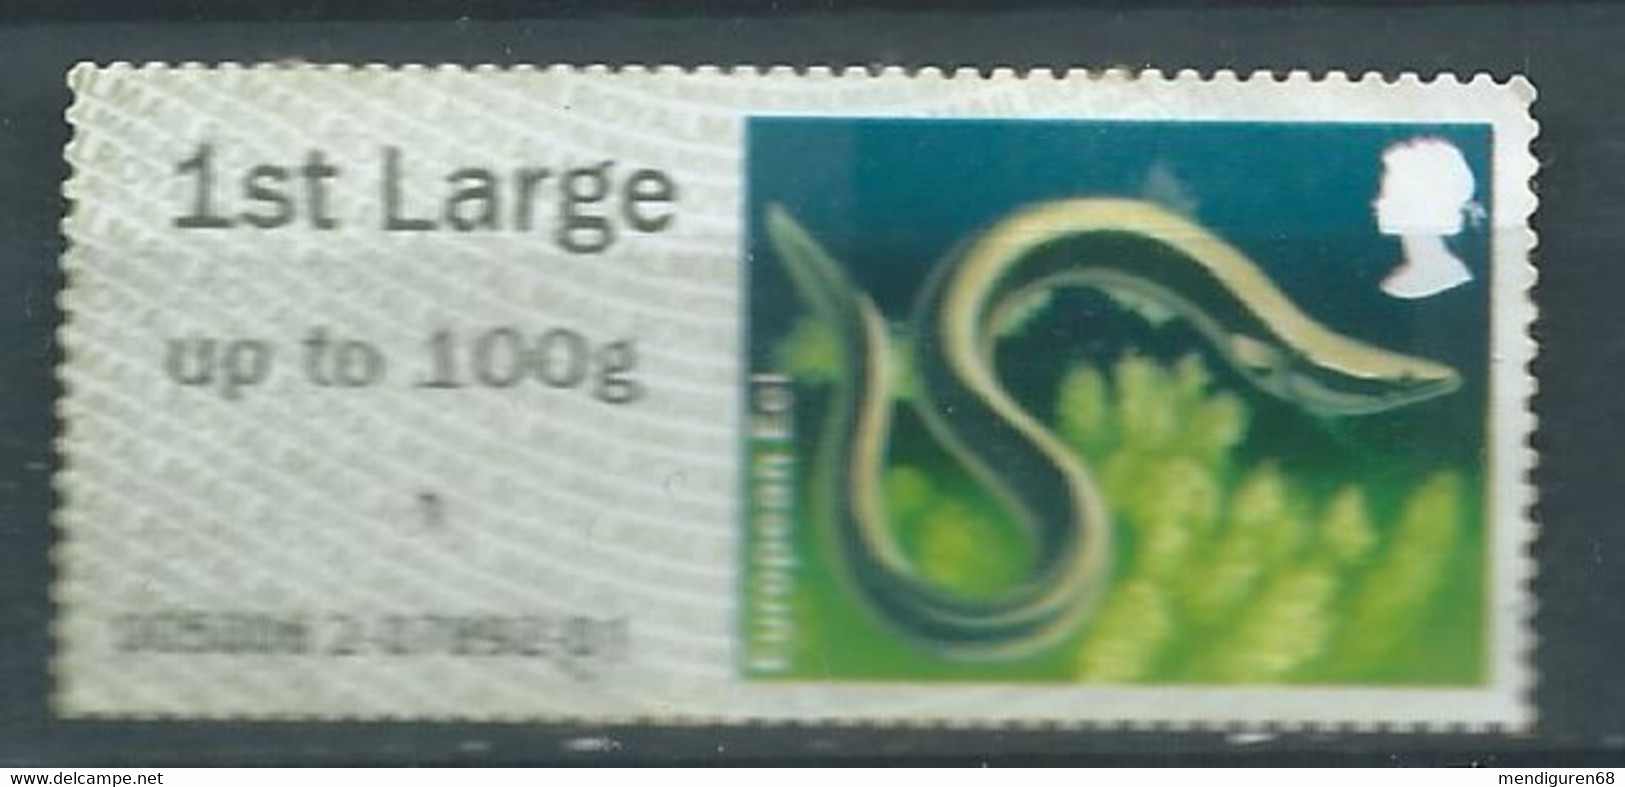 GROSBRITANNIEN GRANDE BRETAGNE GB 2013 POST&GO LAKES:EUROPEAN EEL 1ST LARGE Up To 100g SG FS66 MI ATM 53 YT TD 61 - Post & Go Stamps